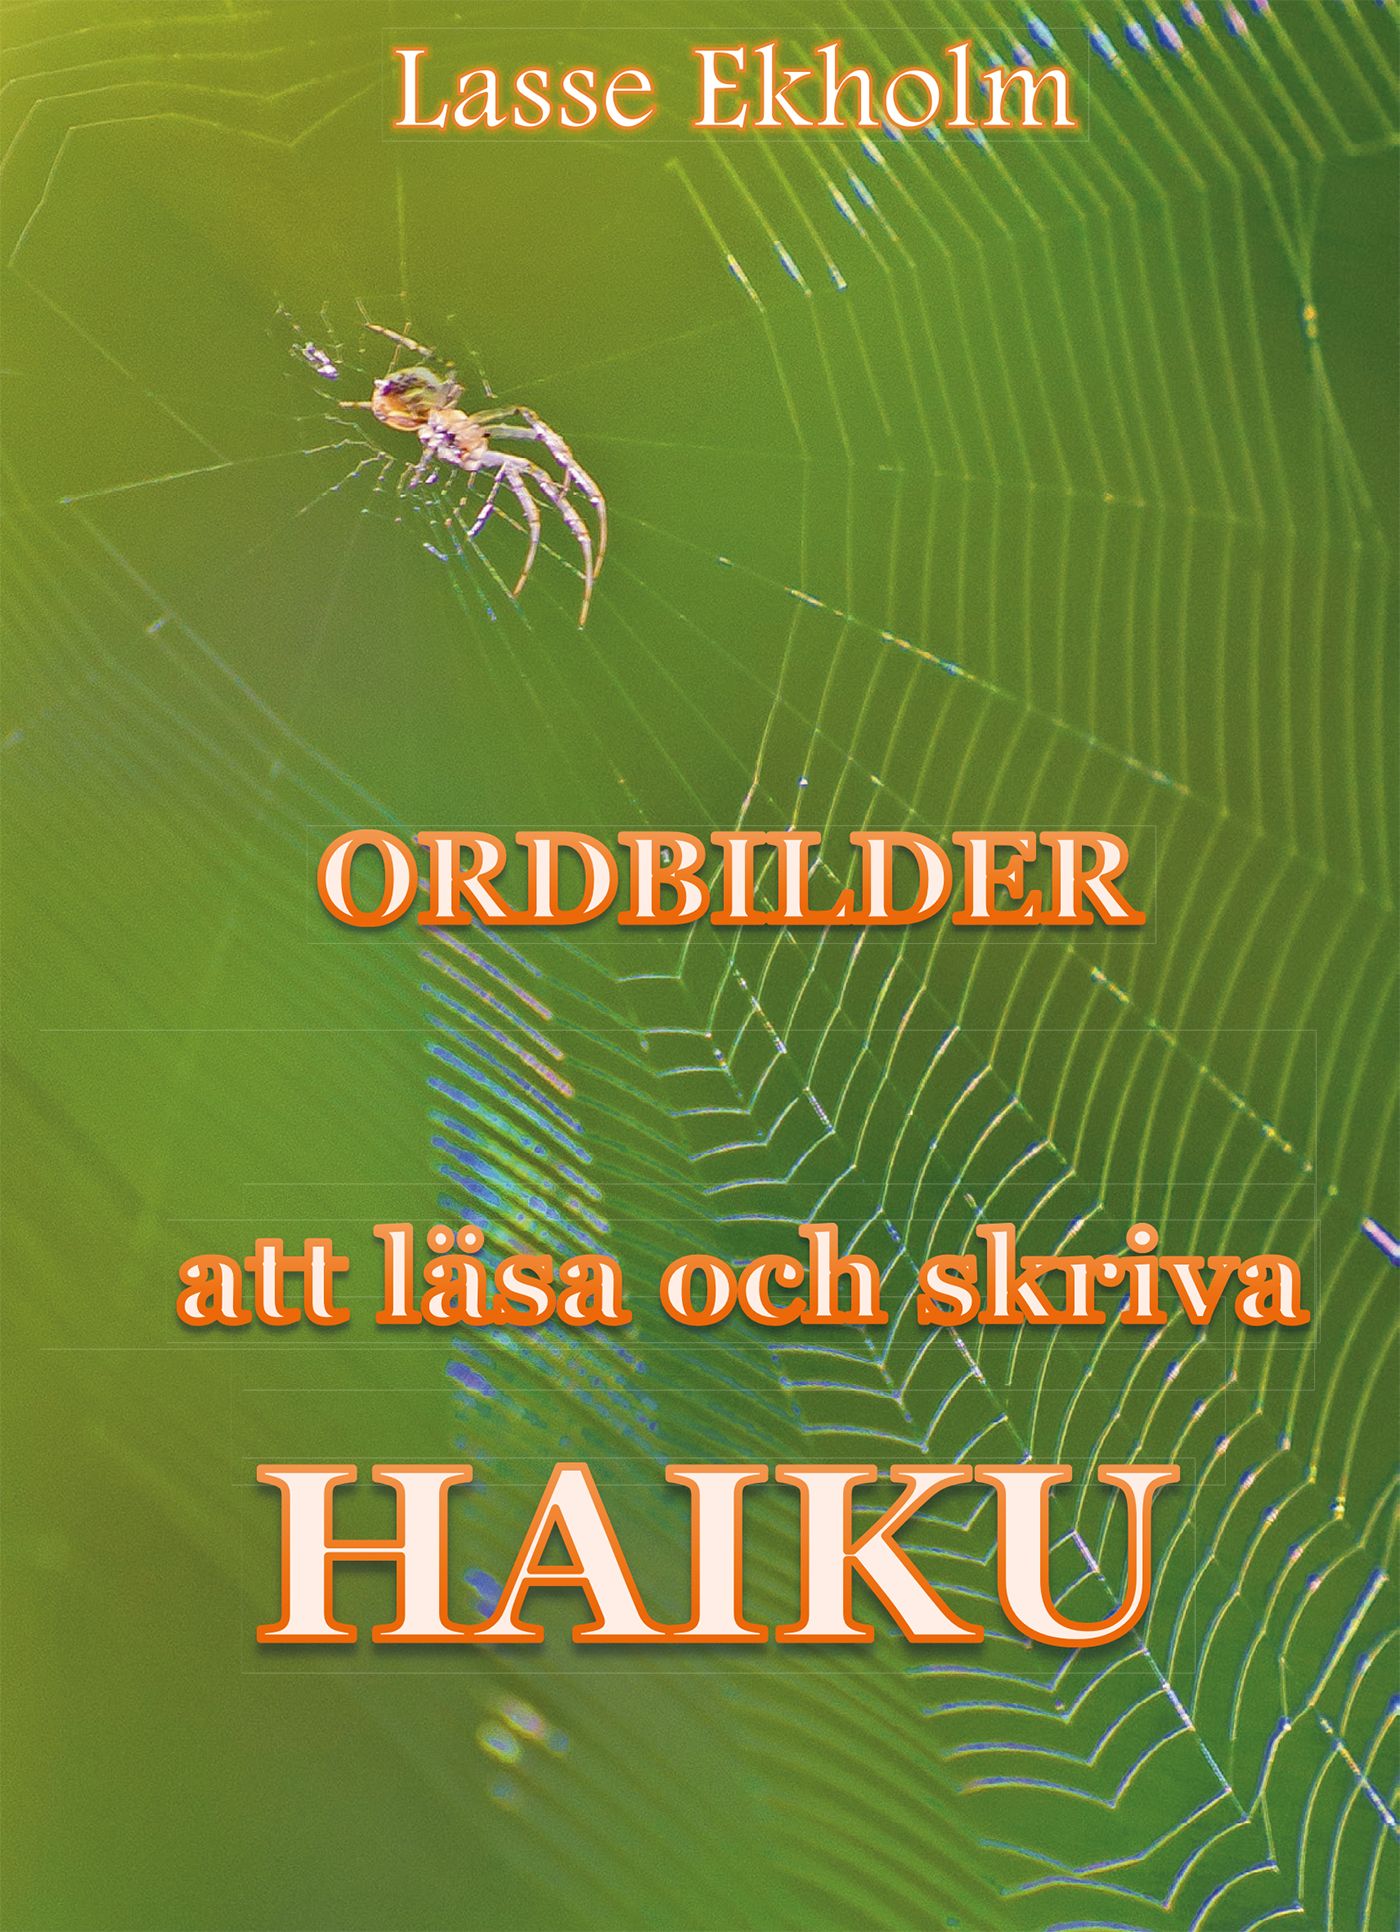 Ordbilder, e-bog af Lasse Ekholm